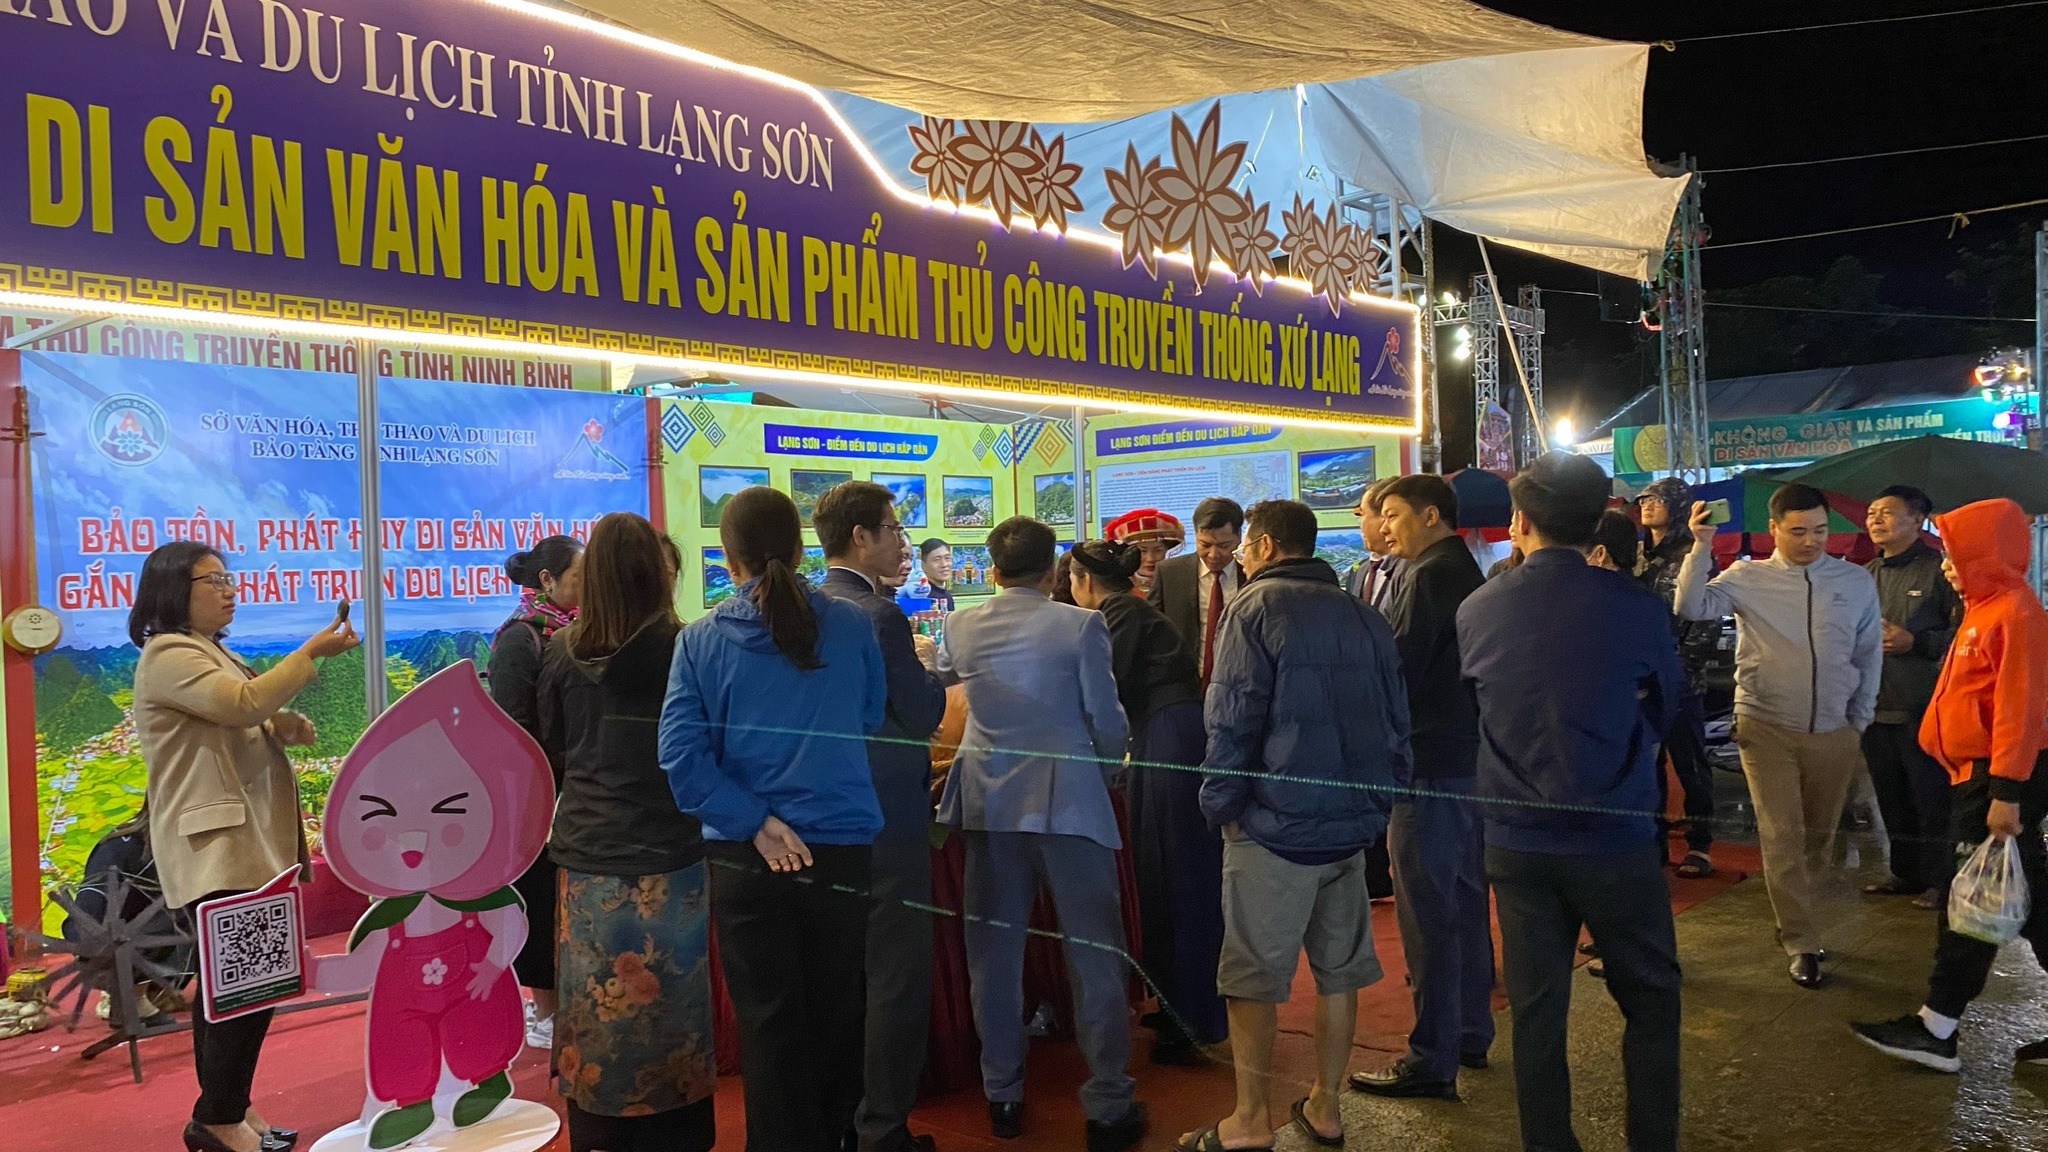 Bảo tàng tỉnh Lạng Sơn nhận bằng khen của Bộ VHTT&DL trong Lễ bế mạc triển lãm "Không gian Di sản văn hóa và Sản phẩm thủ công truyền thống " tại Ninh Bình